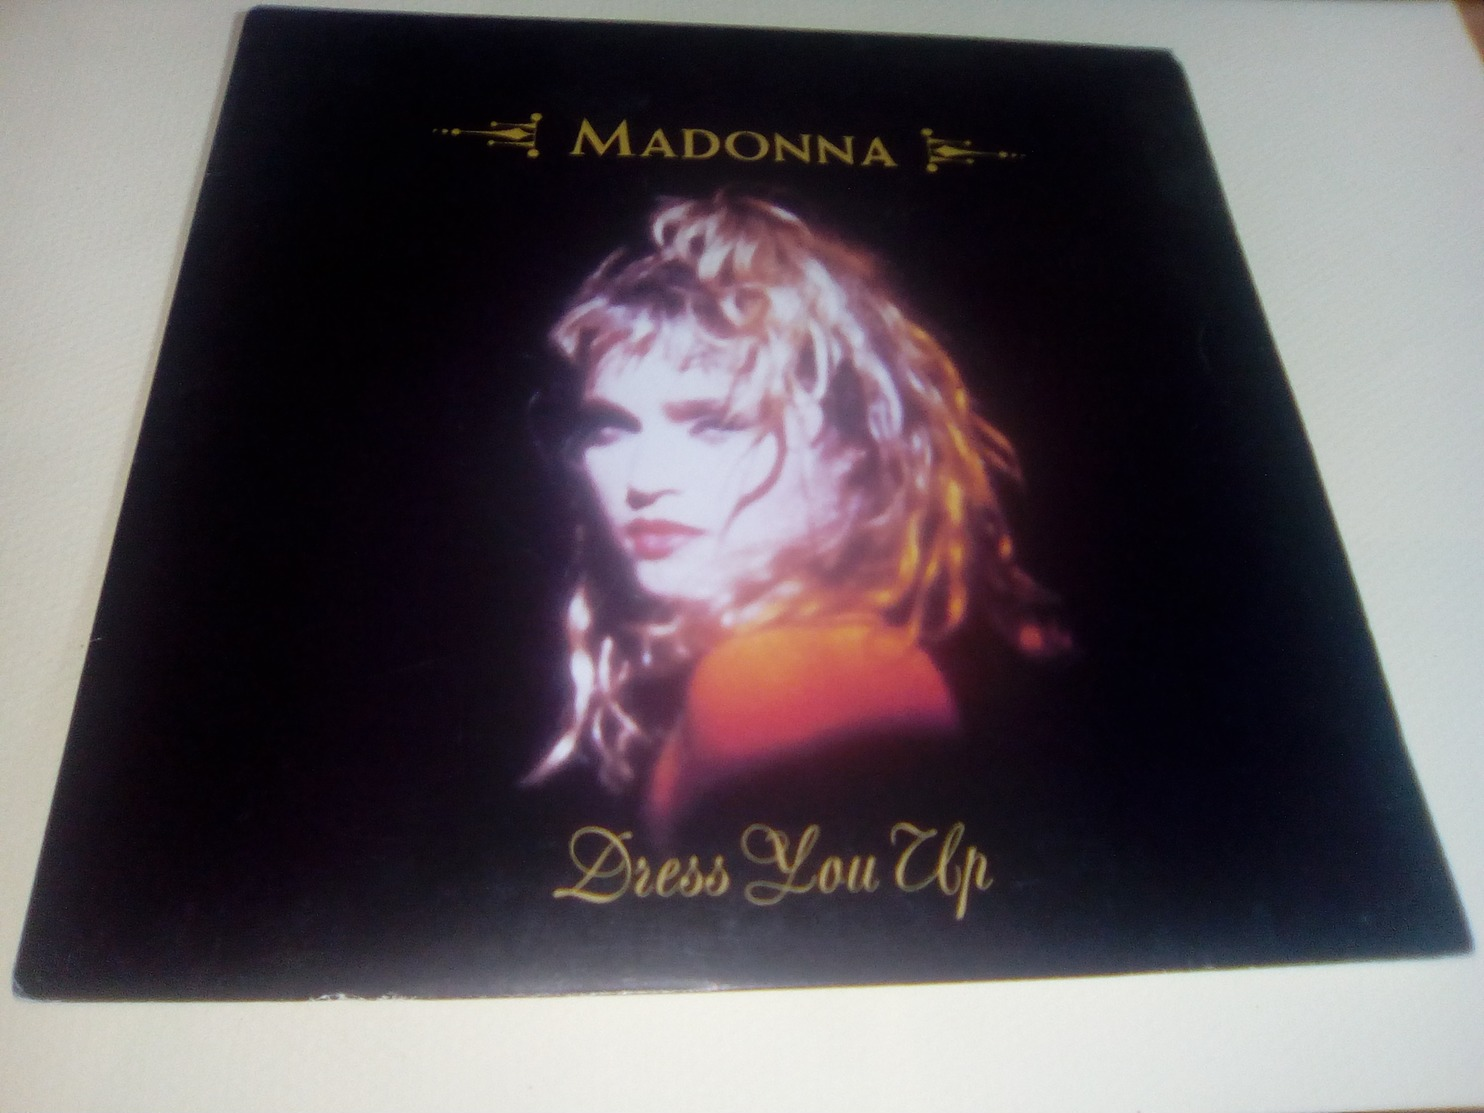 MADONNA "Dress You Up" - Disco & Pop